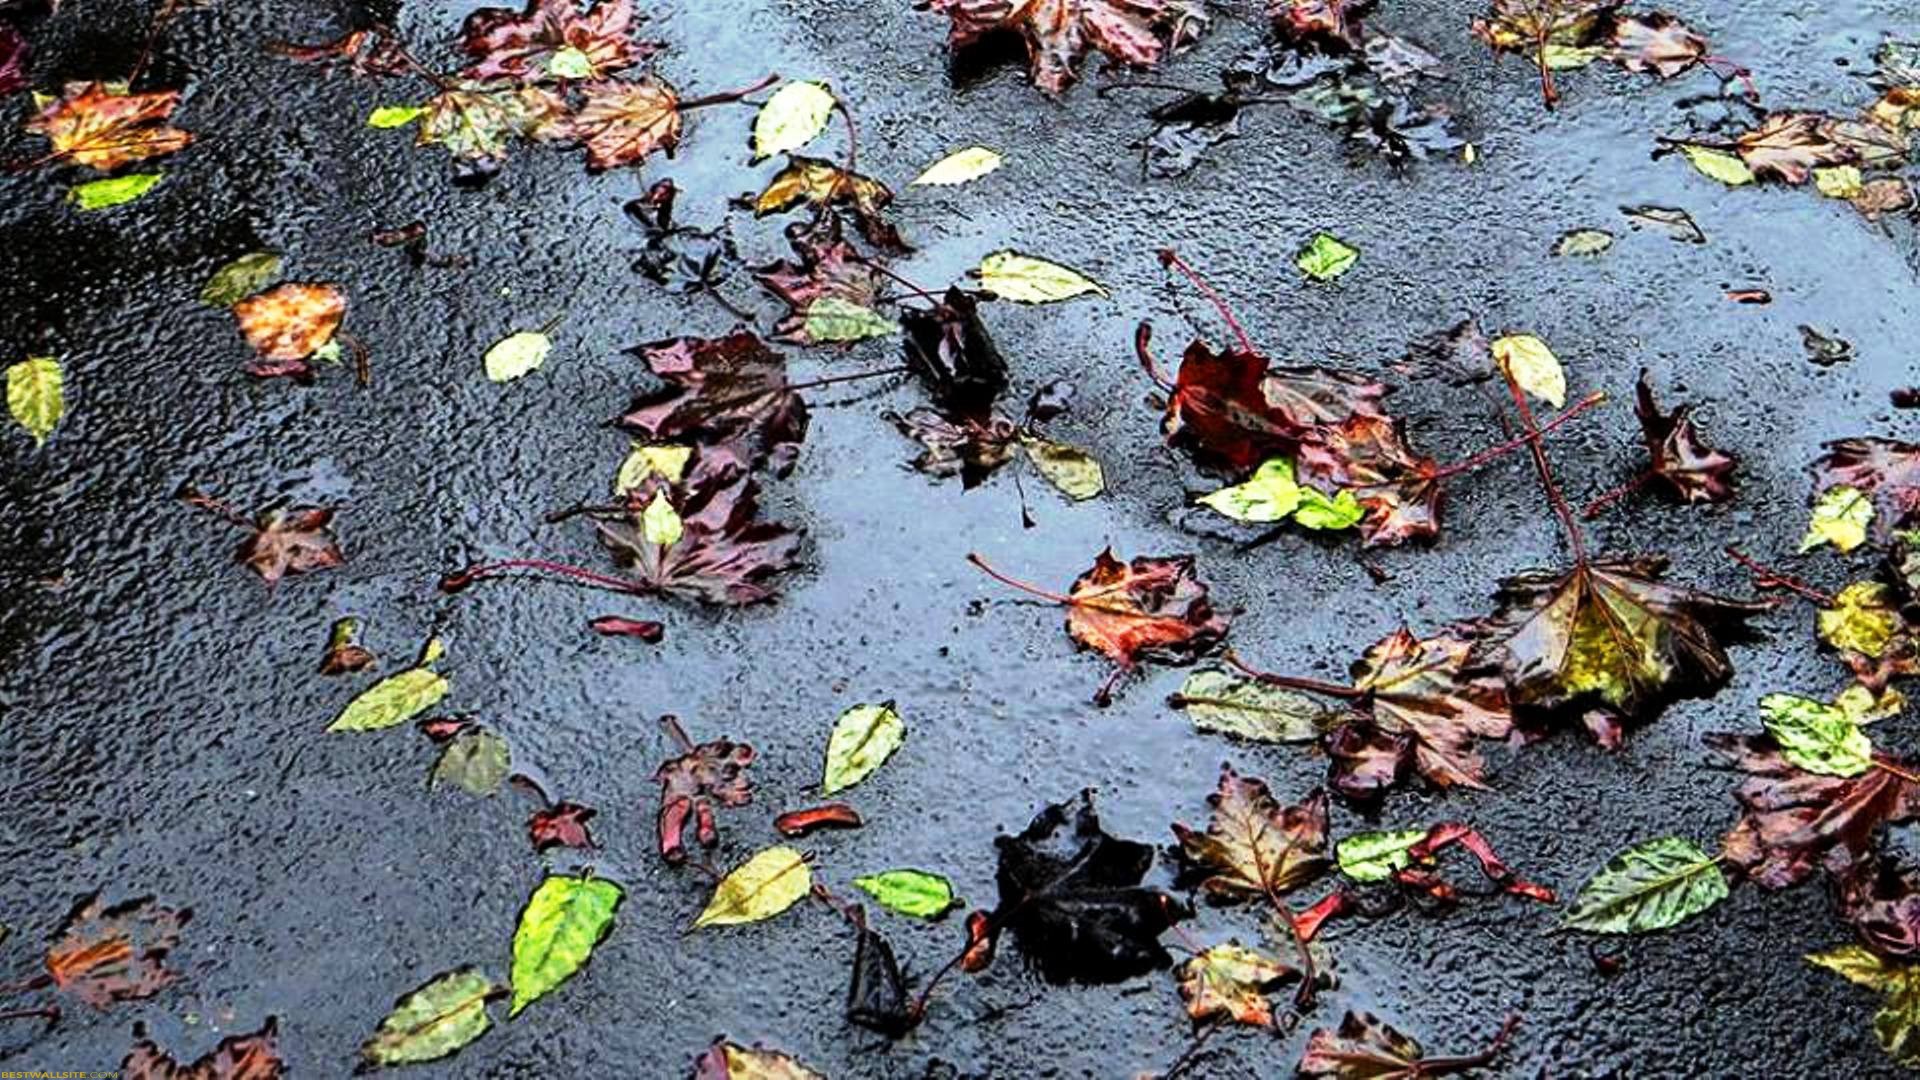 Wet Fallen Leaves On The Street | BestWallSite.com